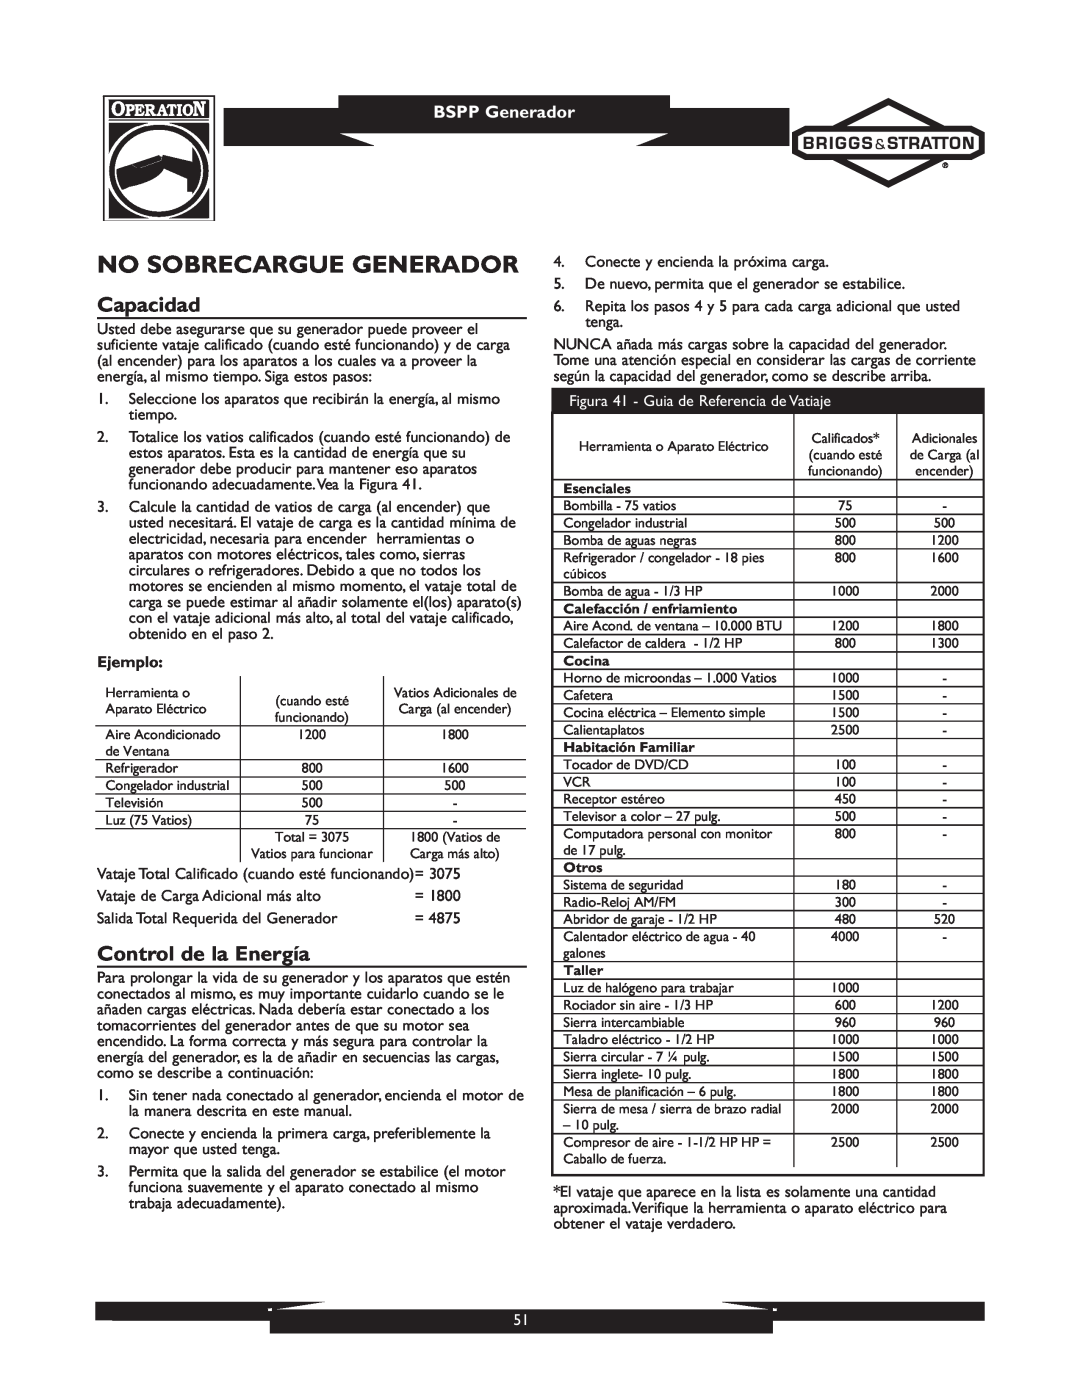 Briggs & Stratton 01933-1 manuel dutilisation No Sobrecargue Generador, Capacidad, Control de la Energía, BSPP Generador 